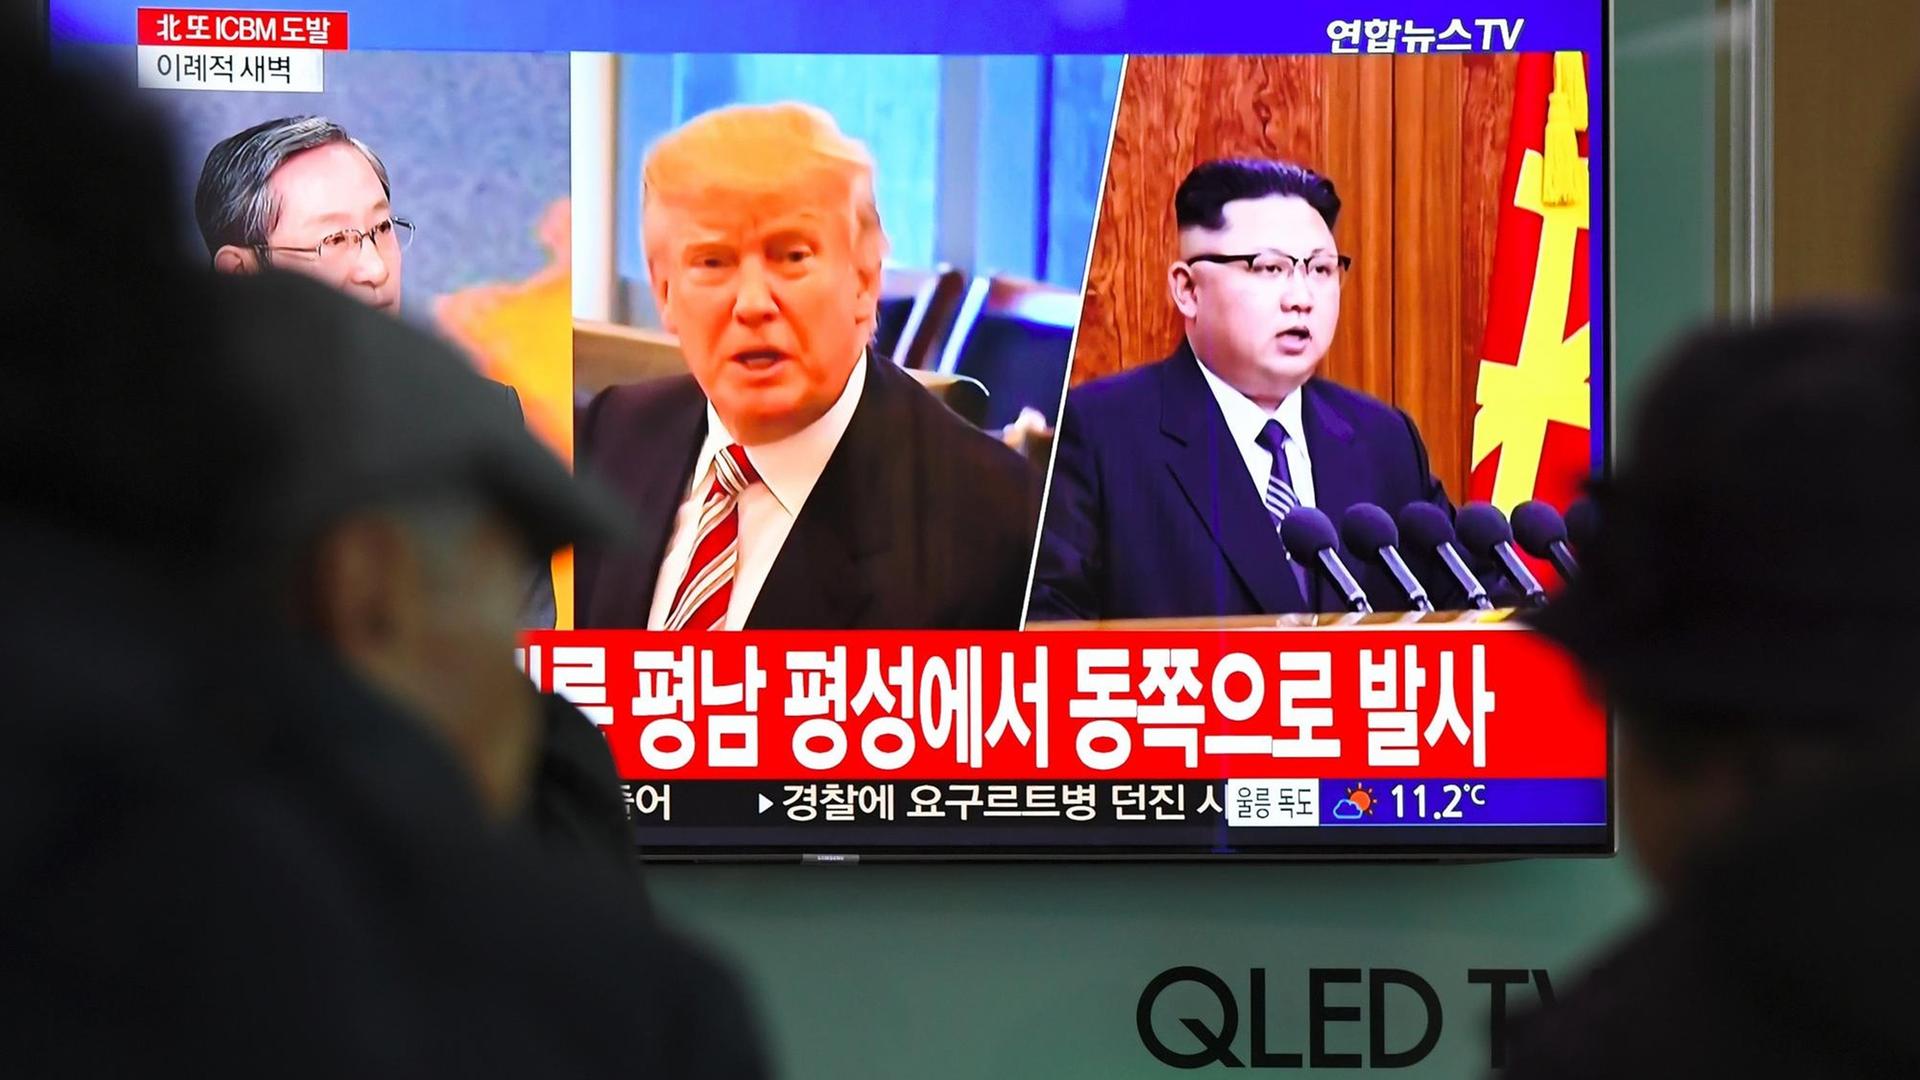 In einer Bahnstation in Seoul in Südkorea stehen Menschen vor einem TV-Bildschirm, auf dem US-Präsident Donald Trump und Nordkoreas Machthaber Kim Jong Un zu sehen sind. 